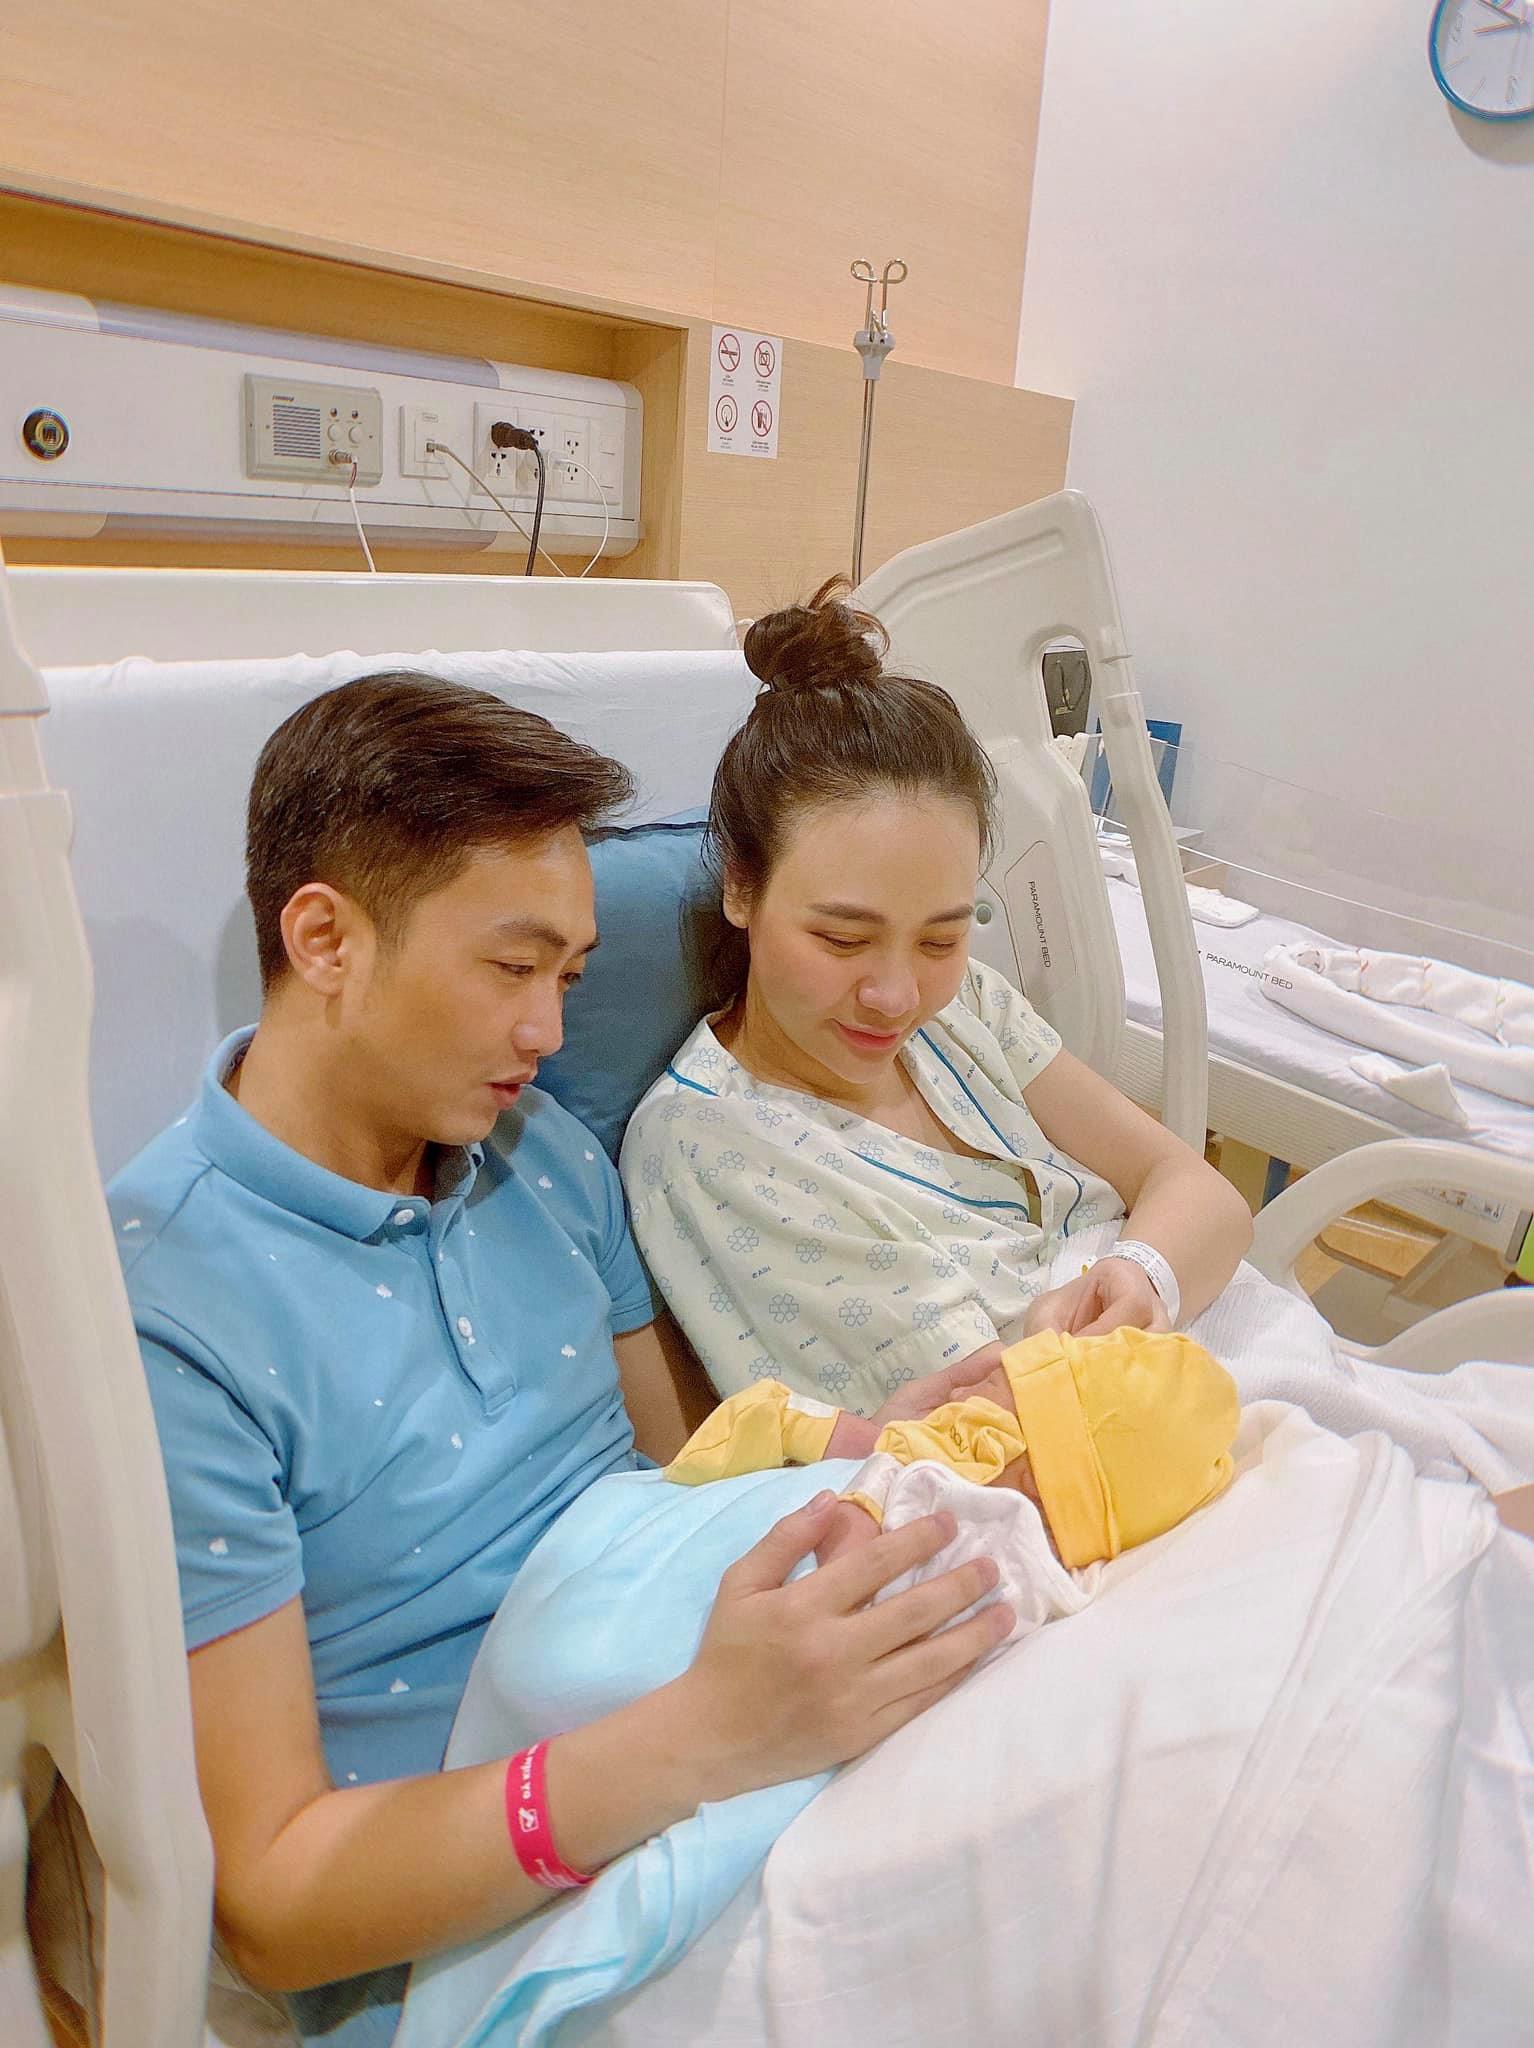 Đàm Thu Trang và Cường Đôla chào đón con gái đầu lòng vào tháng 8/2020 sau hơn 1 năm kết hôn. Doanh nhân phố núi là ông bố mẫu mực khi thường xuyên phụ vợ chăm con gái dù bận rộn công việc kinh doanh.